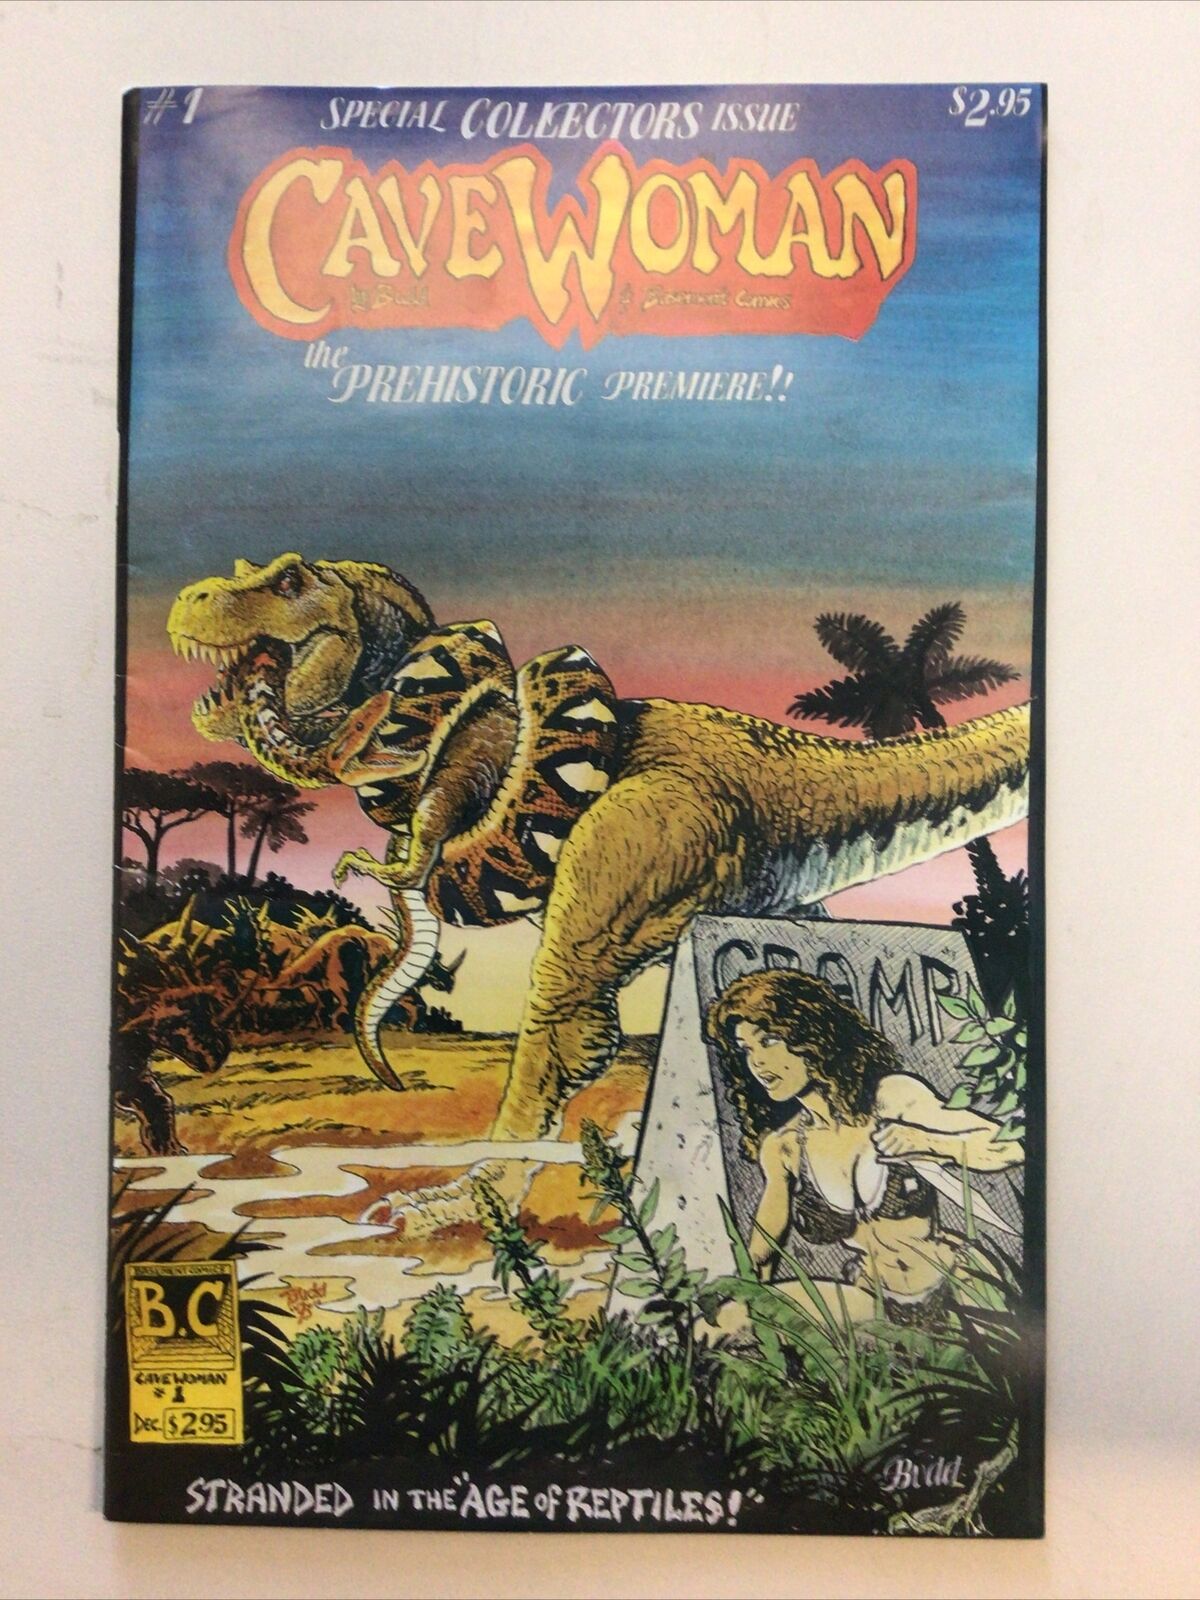 Basement Comics Cavewoman #1 1993